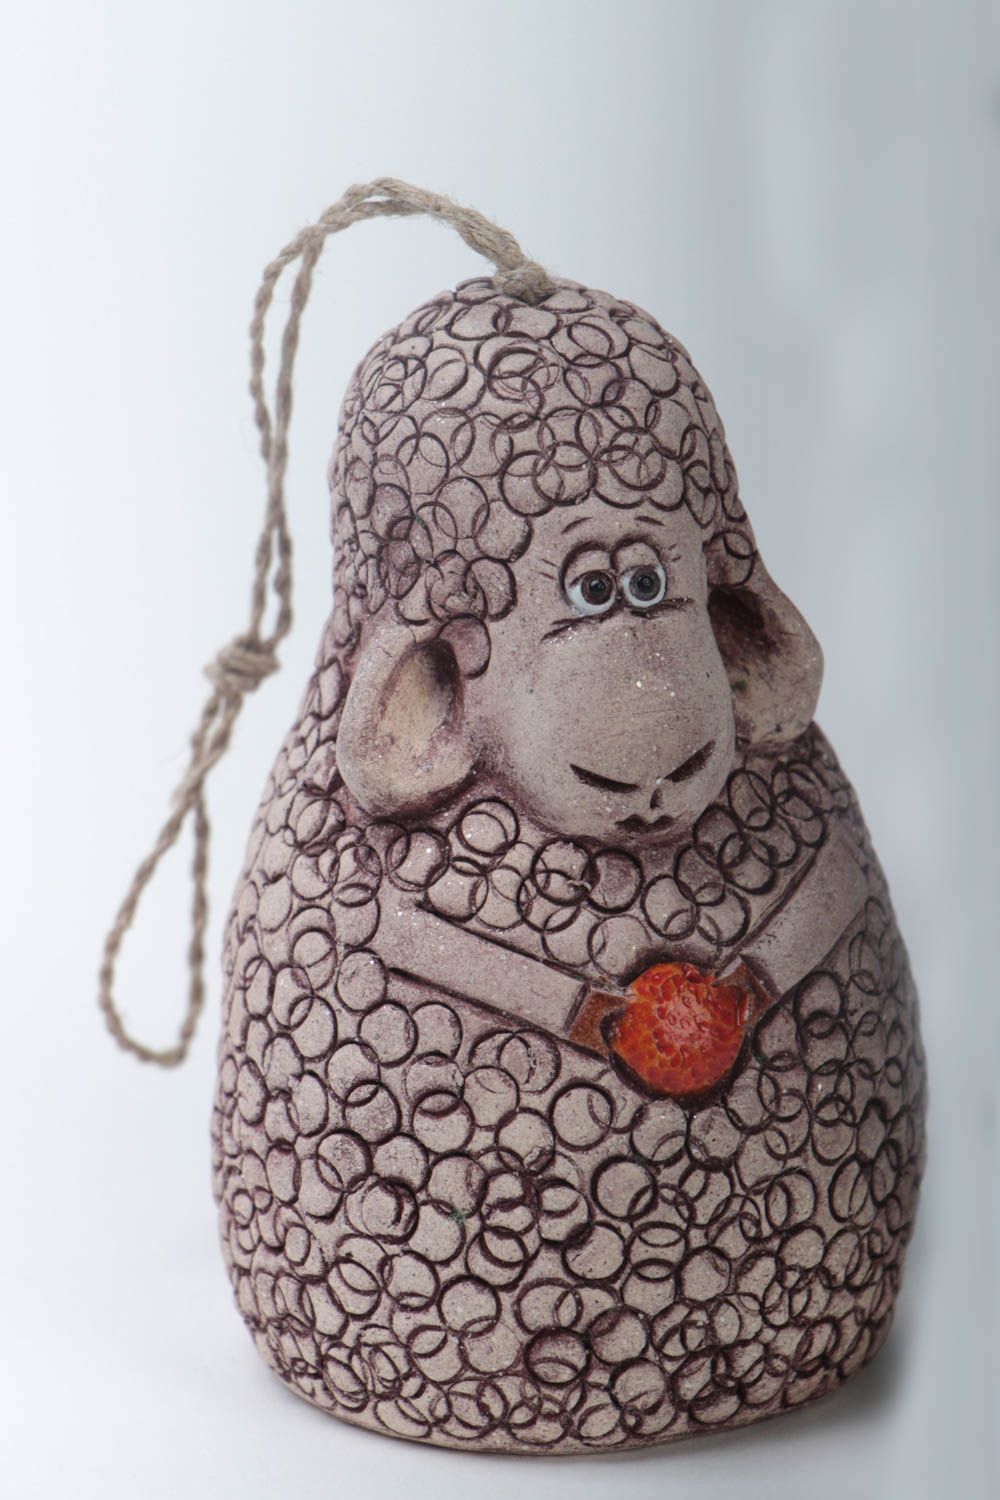 Handmade Deko Glöckchen aus Ton in Form von Schaf klein schön für Haus Dekor foto 2